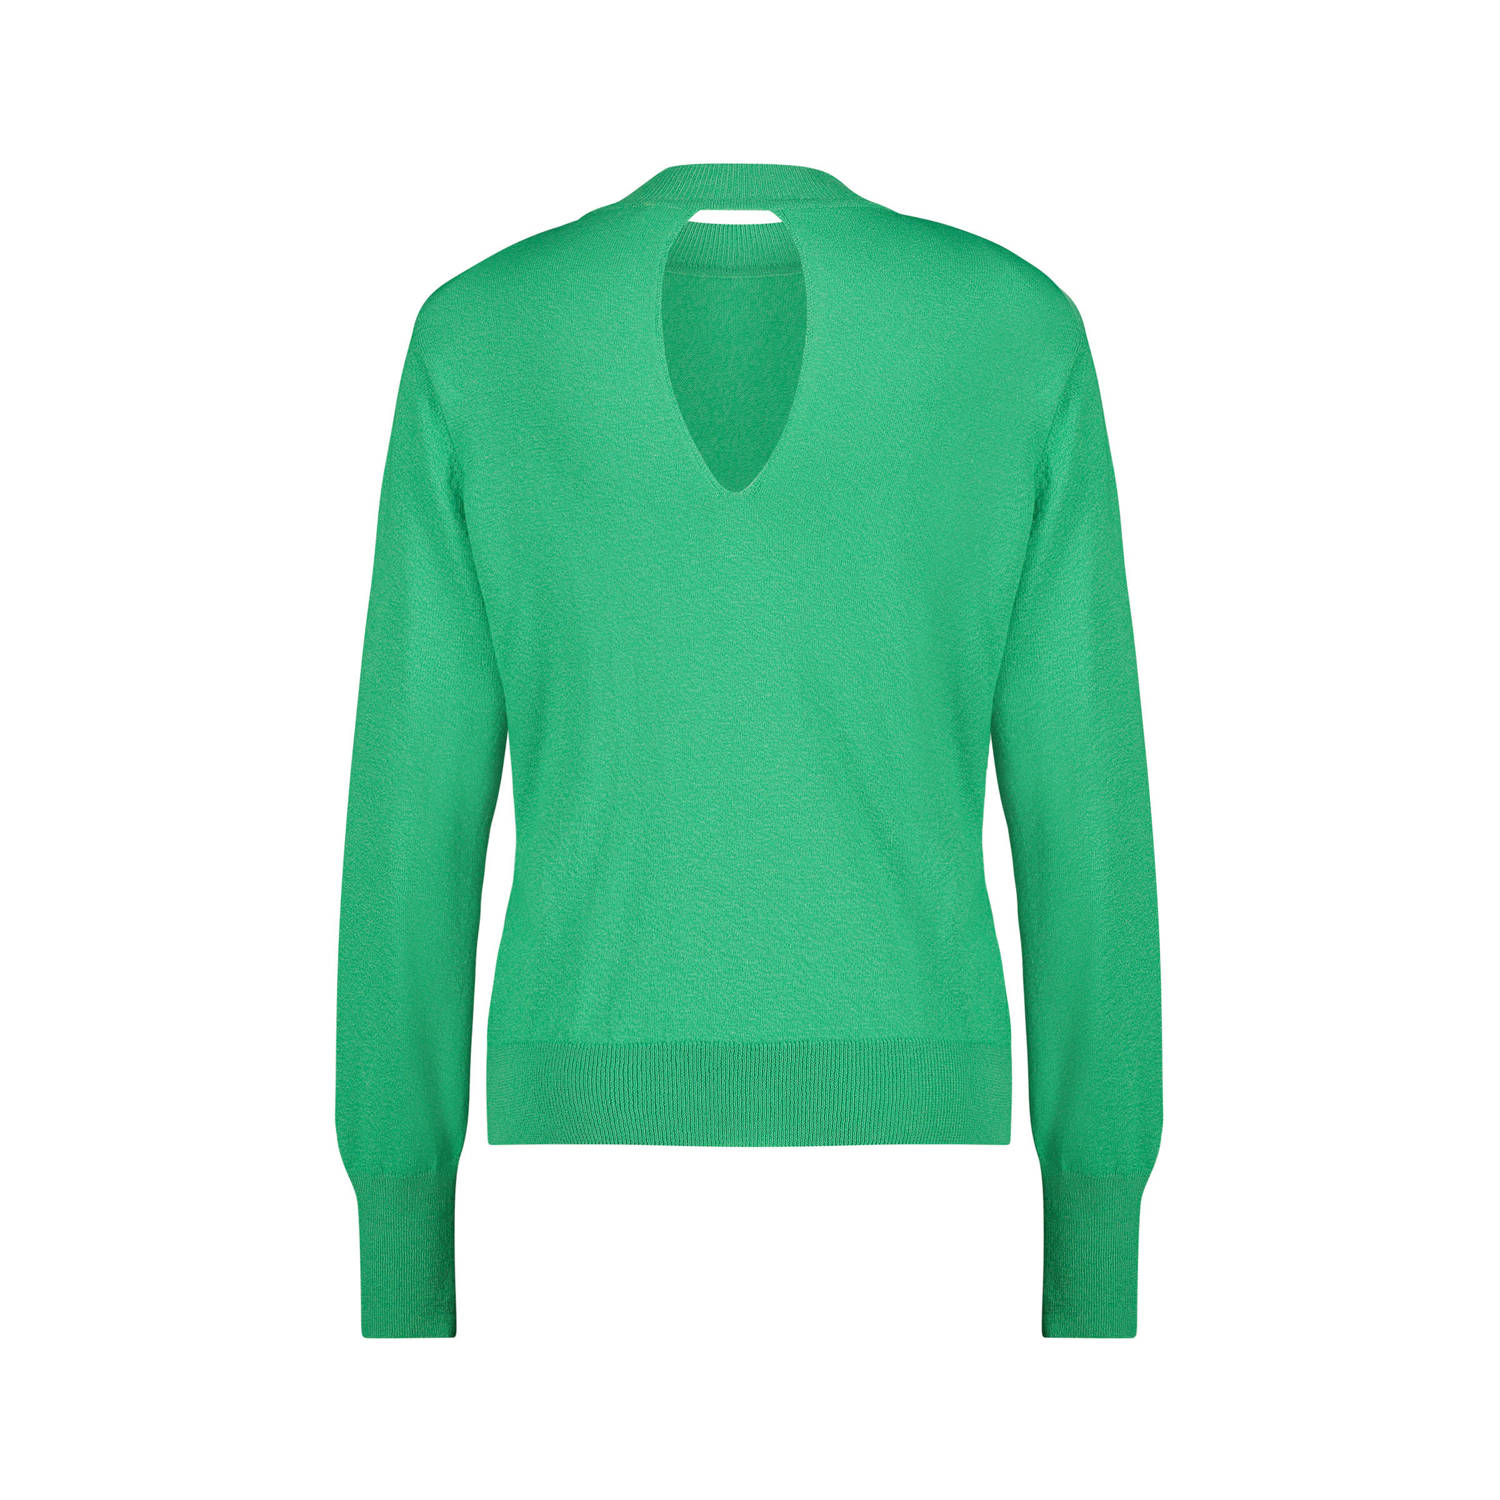 Expresso fijngebreide trui met open detail groen